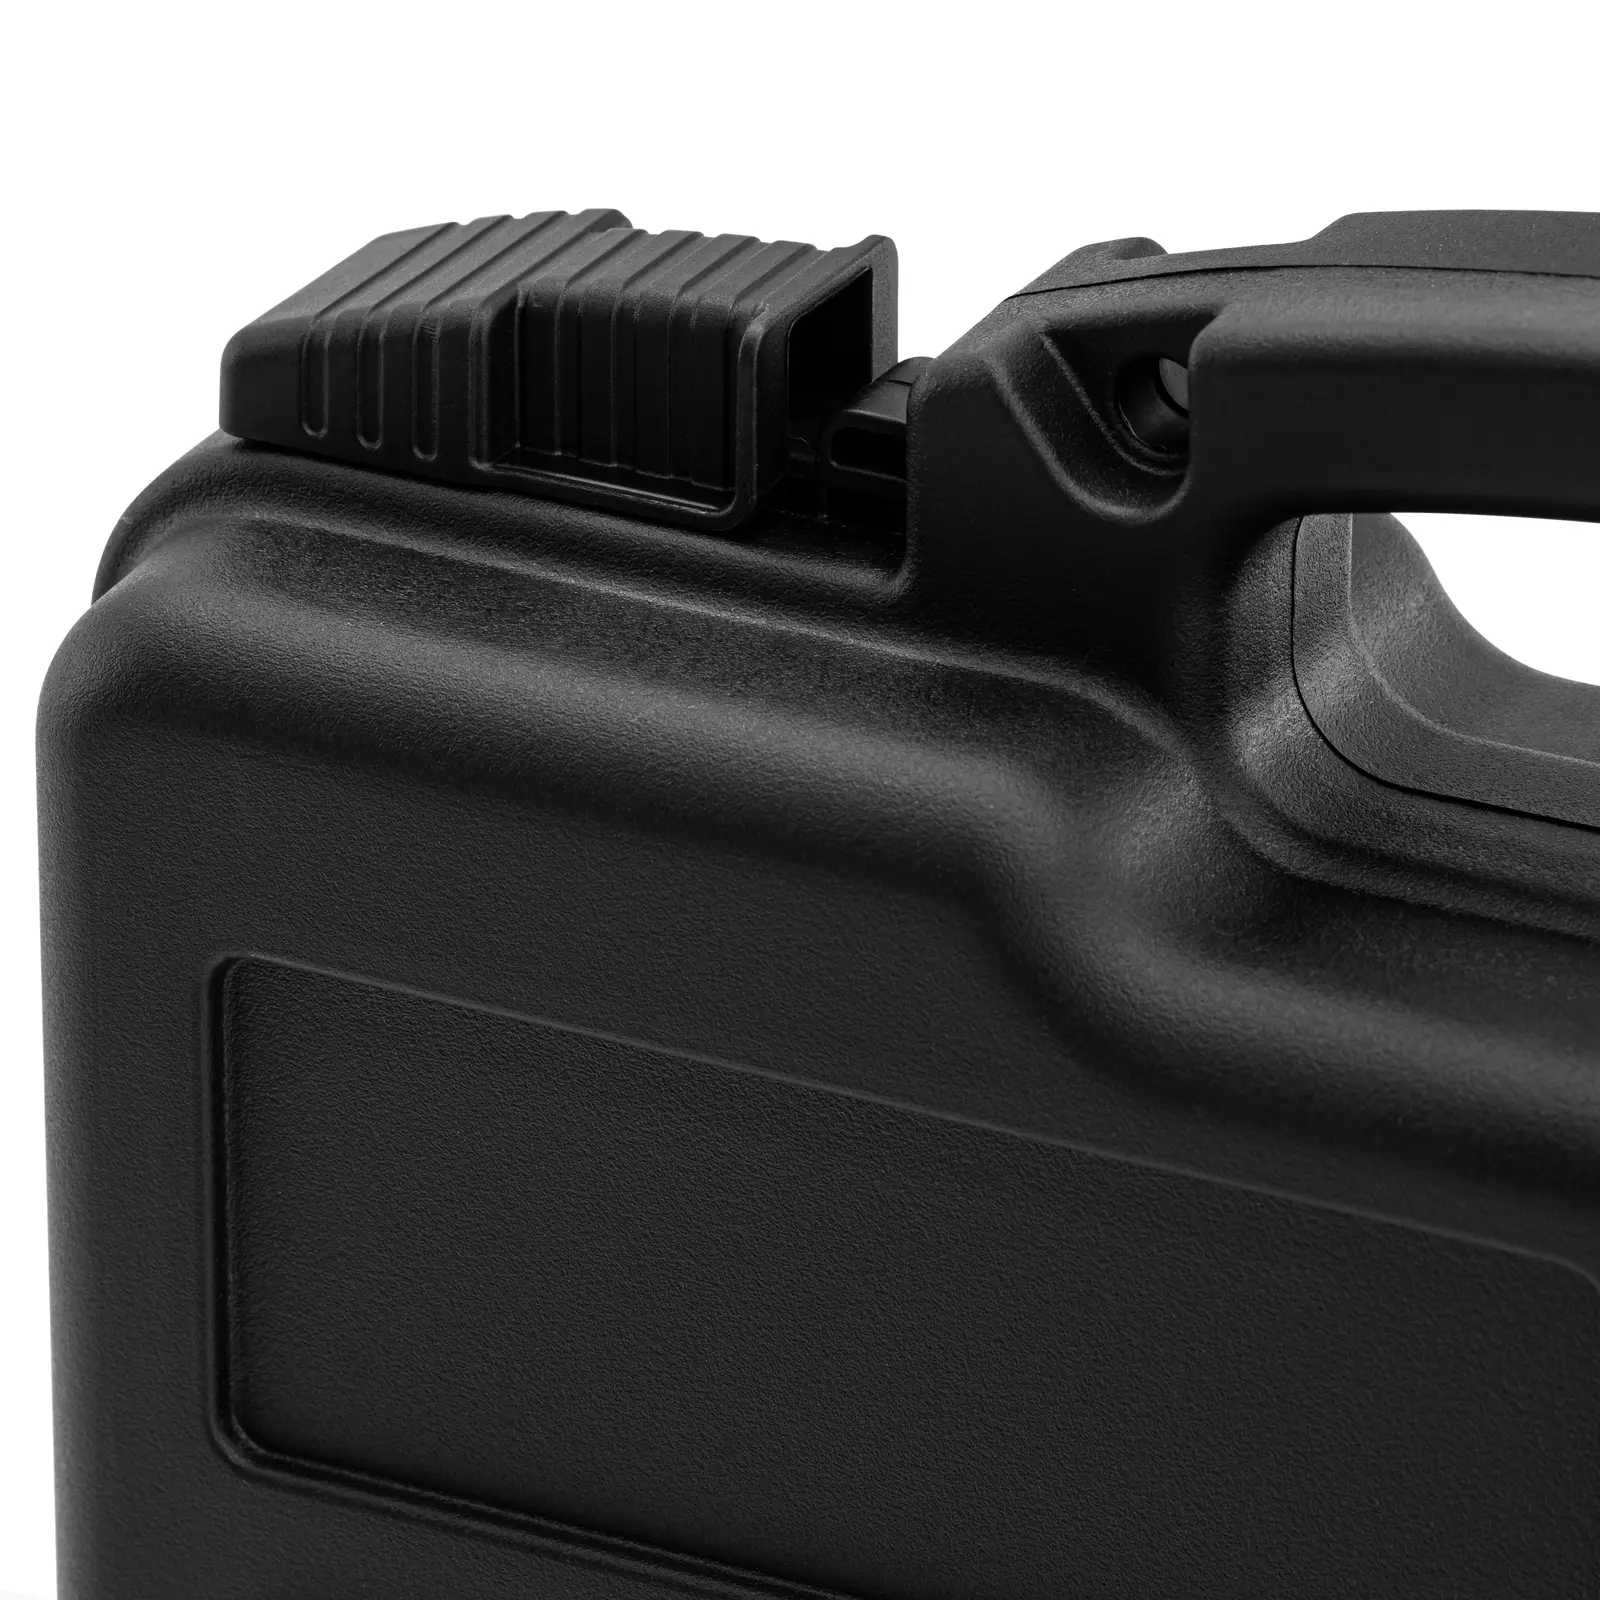 Hard Carrying Case - waterproof - 3.6 l - black